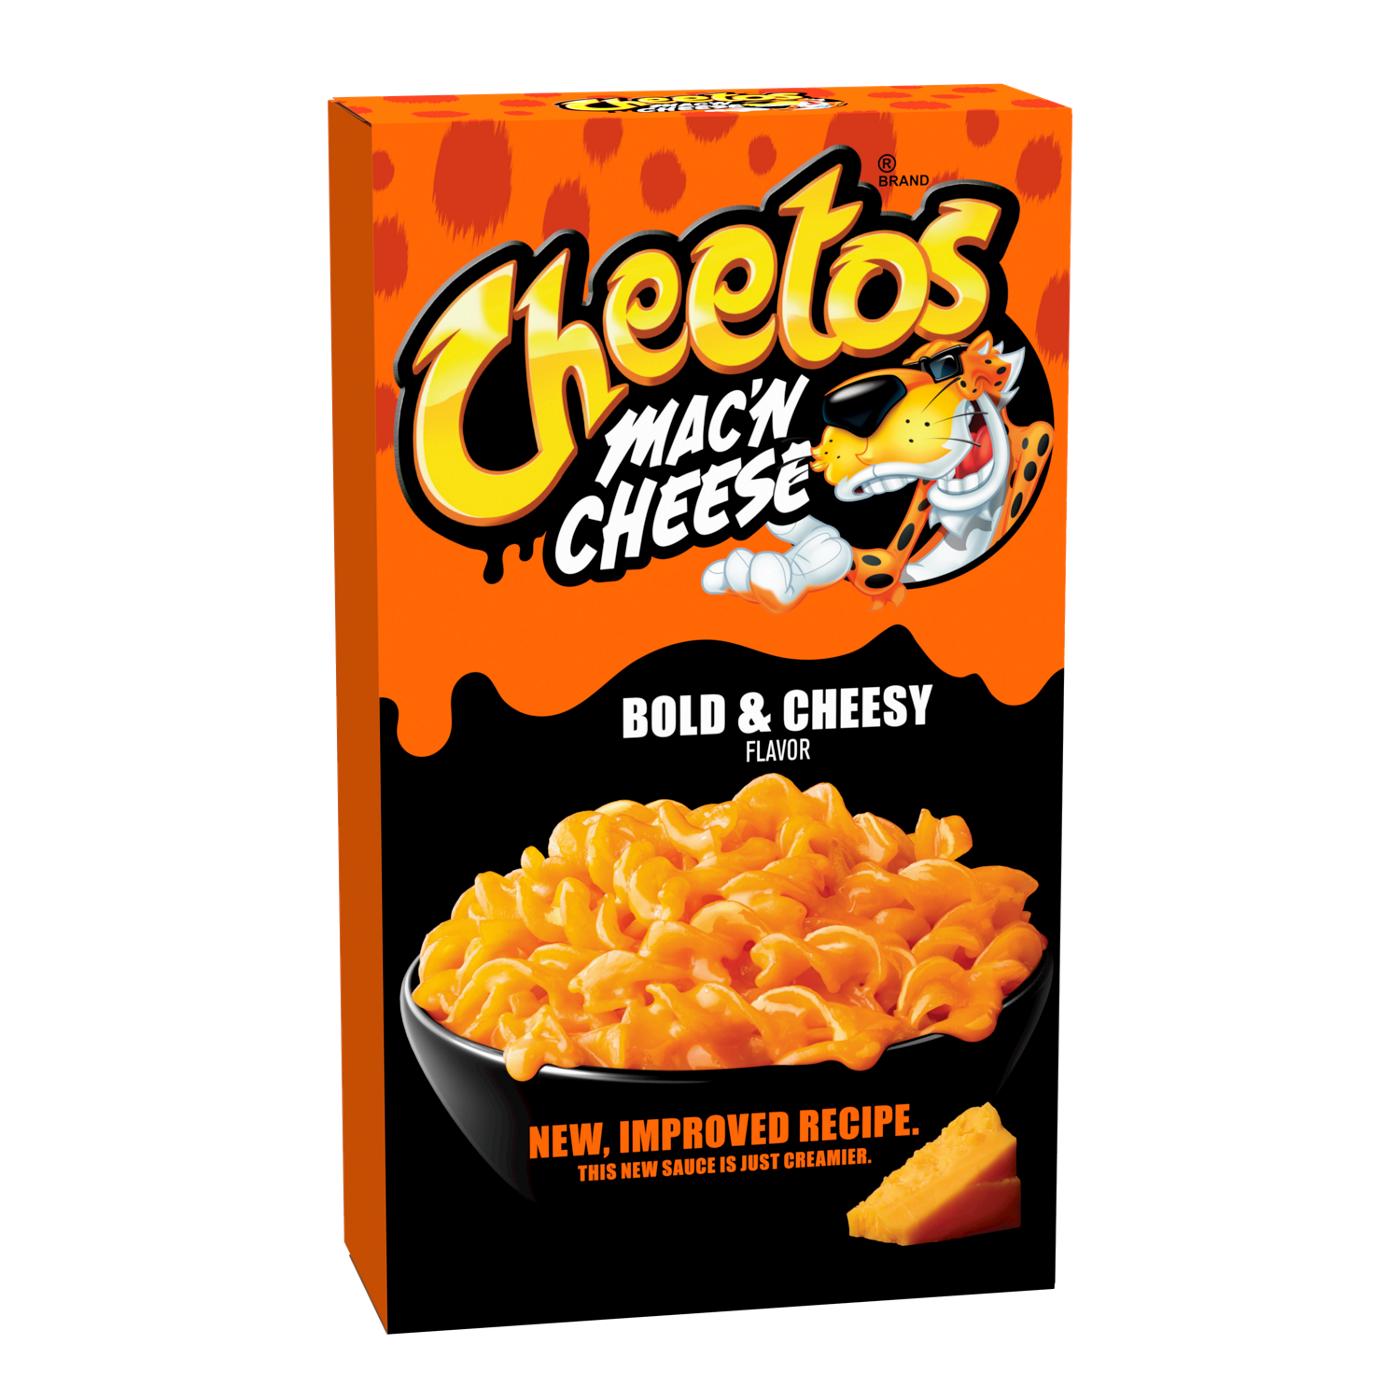 Cheetos Bold & Cheesy Mac 'n Cheese; image 1 of 2